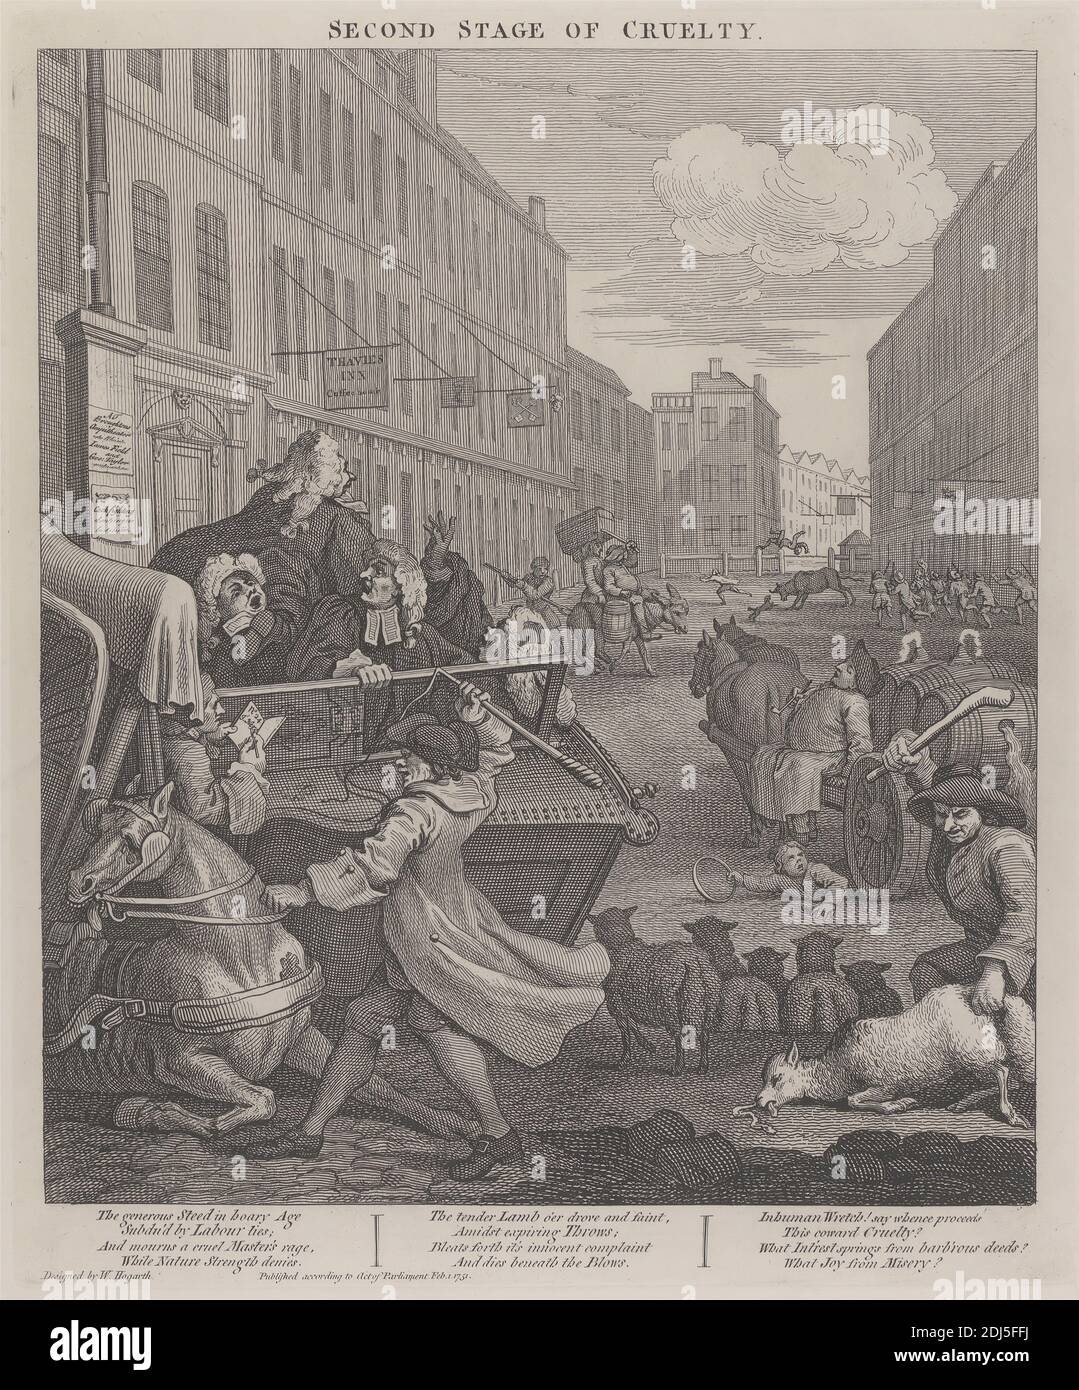 La seconda fase della crudeltà: Coachman battendo un cavallo caduto, Stampa fatta da William Hogarth, 1697–1764, inglese, 1751, stampato 1790, incisione su carta spessa, bianca, liscia, foglio: 24 7/8 x 19 1/4 pollici (63.2 x 48.9 cm), piatto: 15 1/4 x 12 3/4 pollici (38.7 x 32.4 cm), e immagine: 13 3/4 x 11 7/8 pollici (34.9 x 30.2 cm), barili, toro, cart, paesaggio urbano, pullman, cachman, crudeltà, asino, genere soggetto, avidità, cavallo (animale), locanda, avvocati, uomini, pecore, segni, strada, taverna, tortura, violenza, gallese, Inghilterra, Europa, Londra, Regno Unito Foto Stock